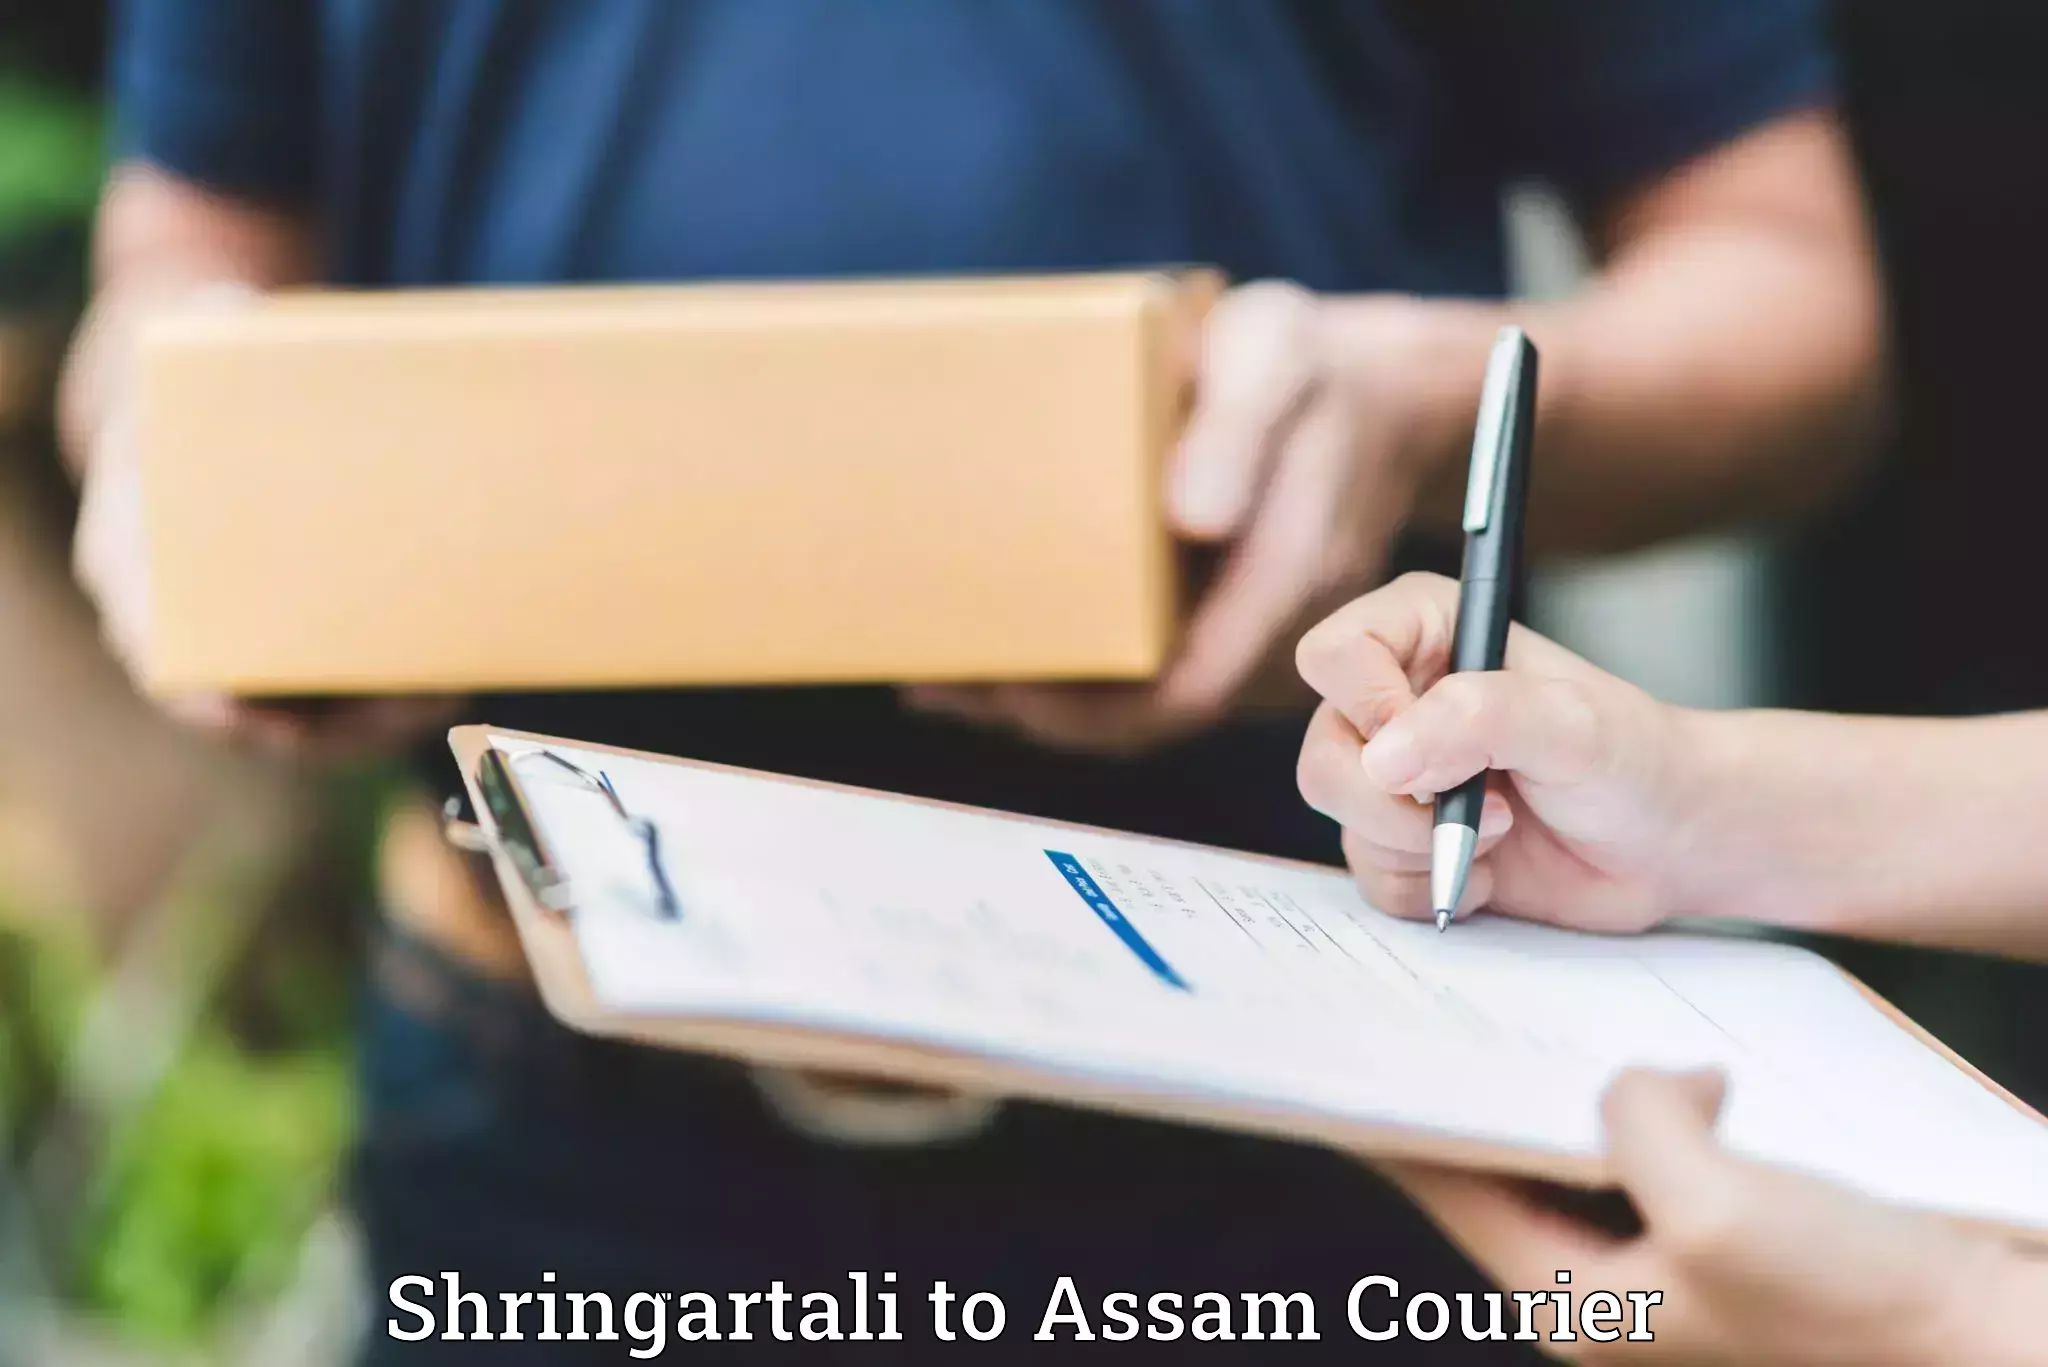 Luggage transit service Shringartali to Lala Assam